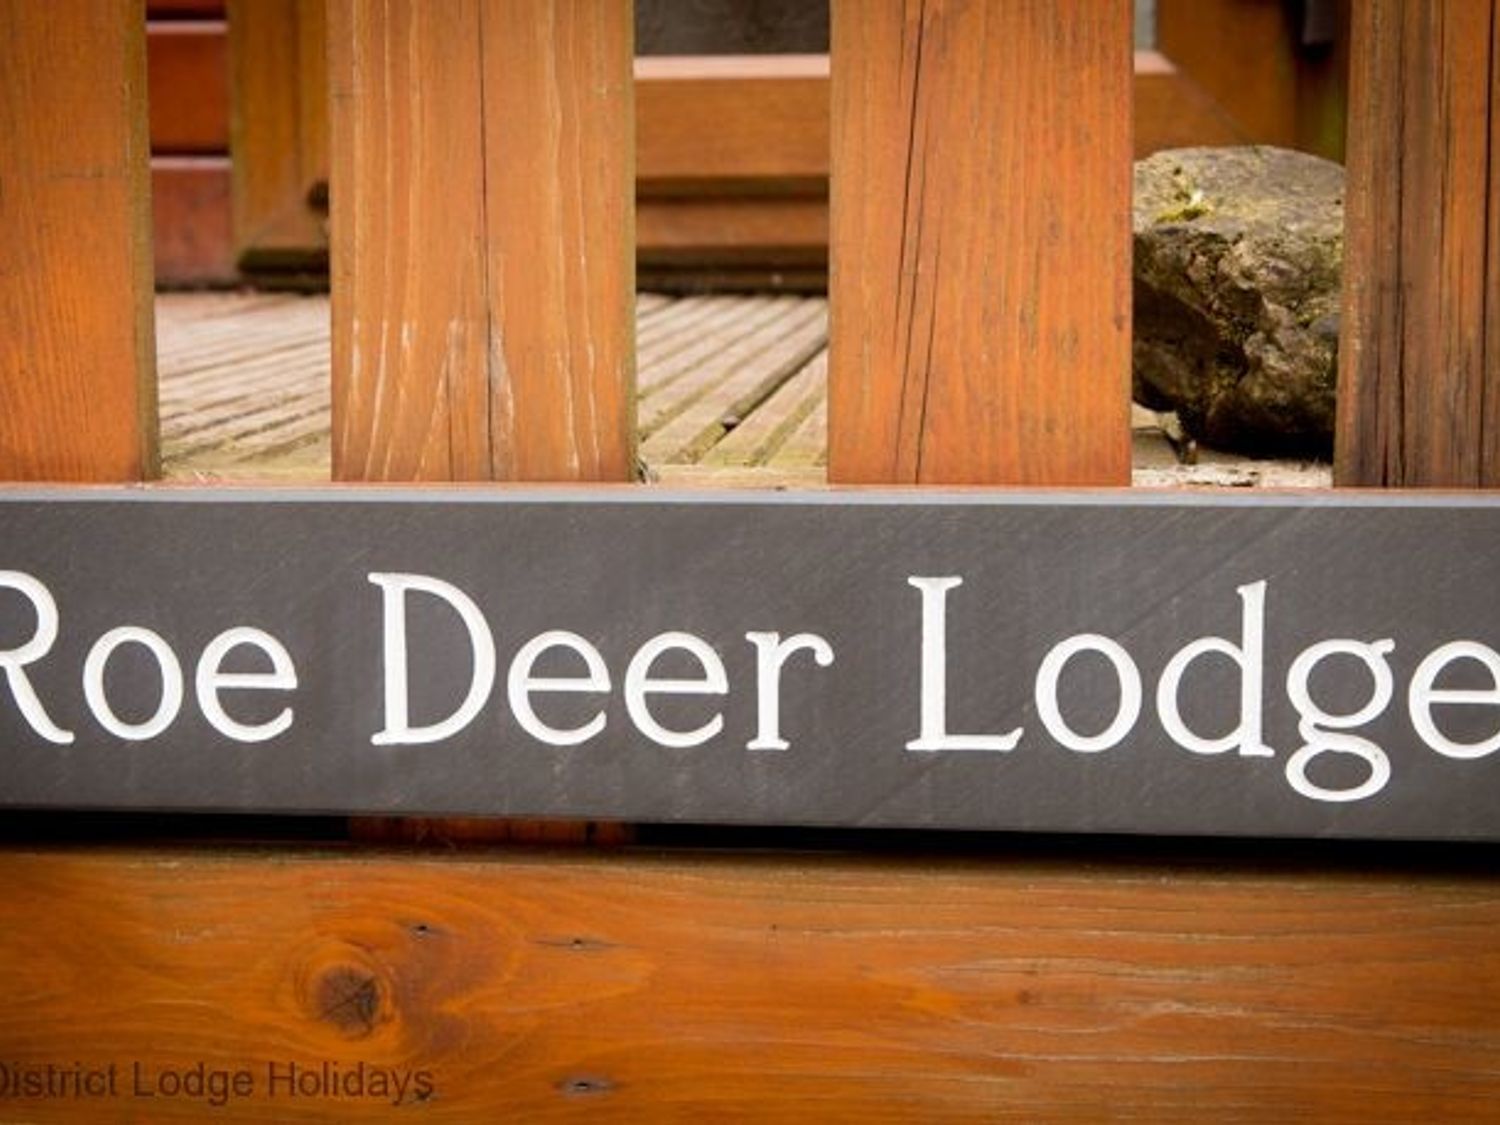 Roe Deer Lodge, Windermere